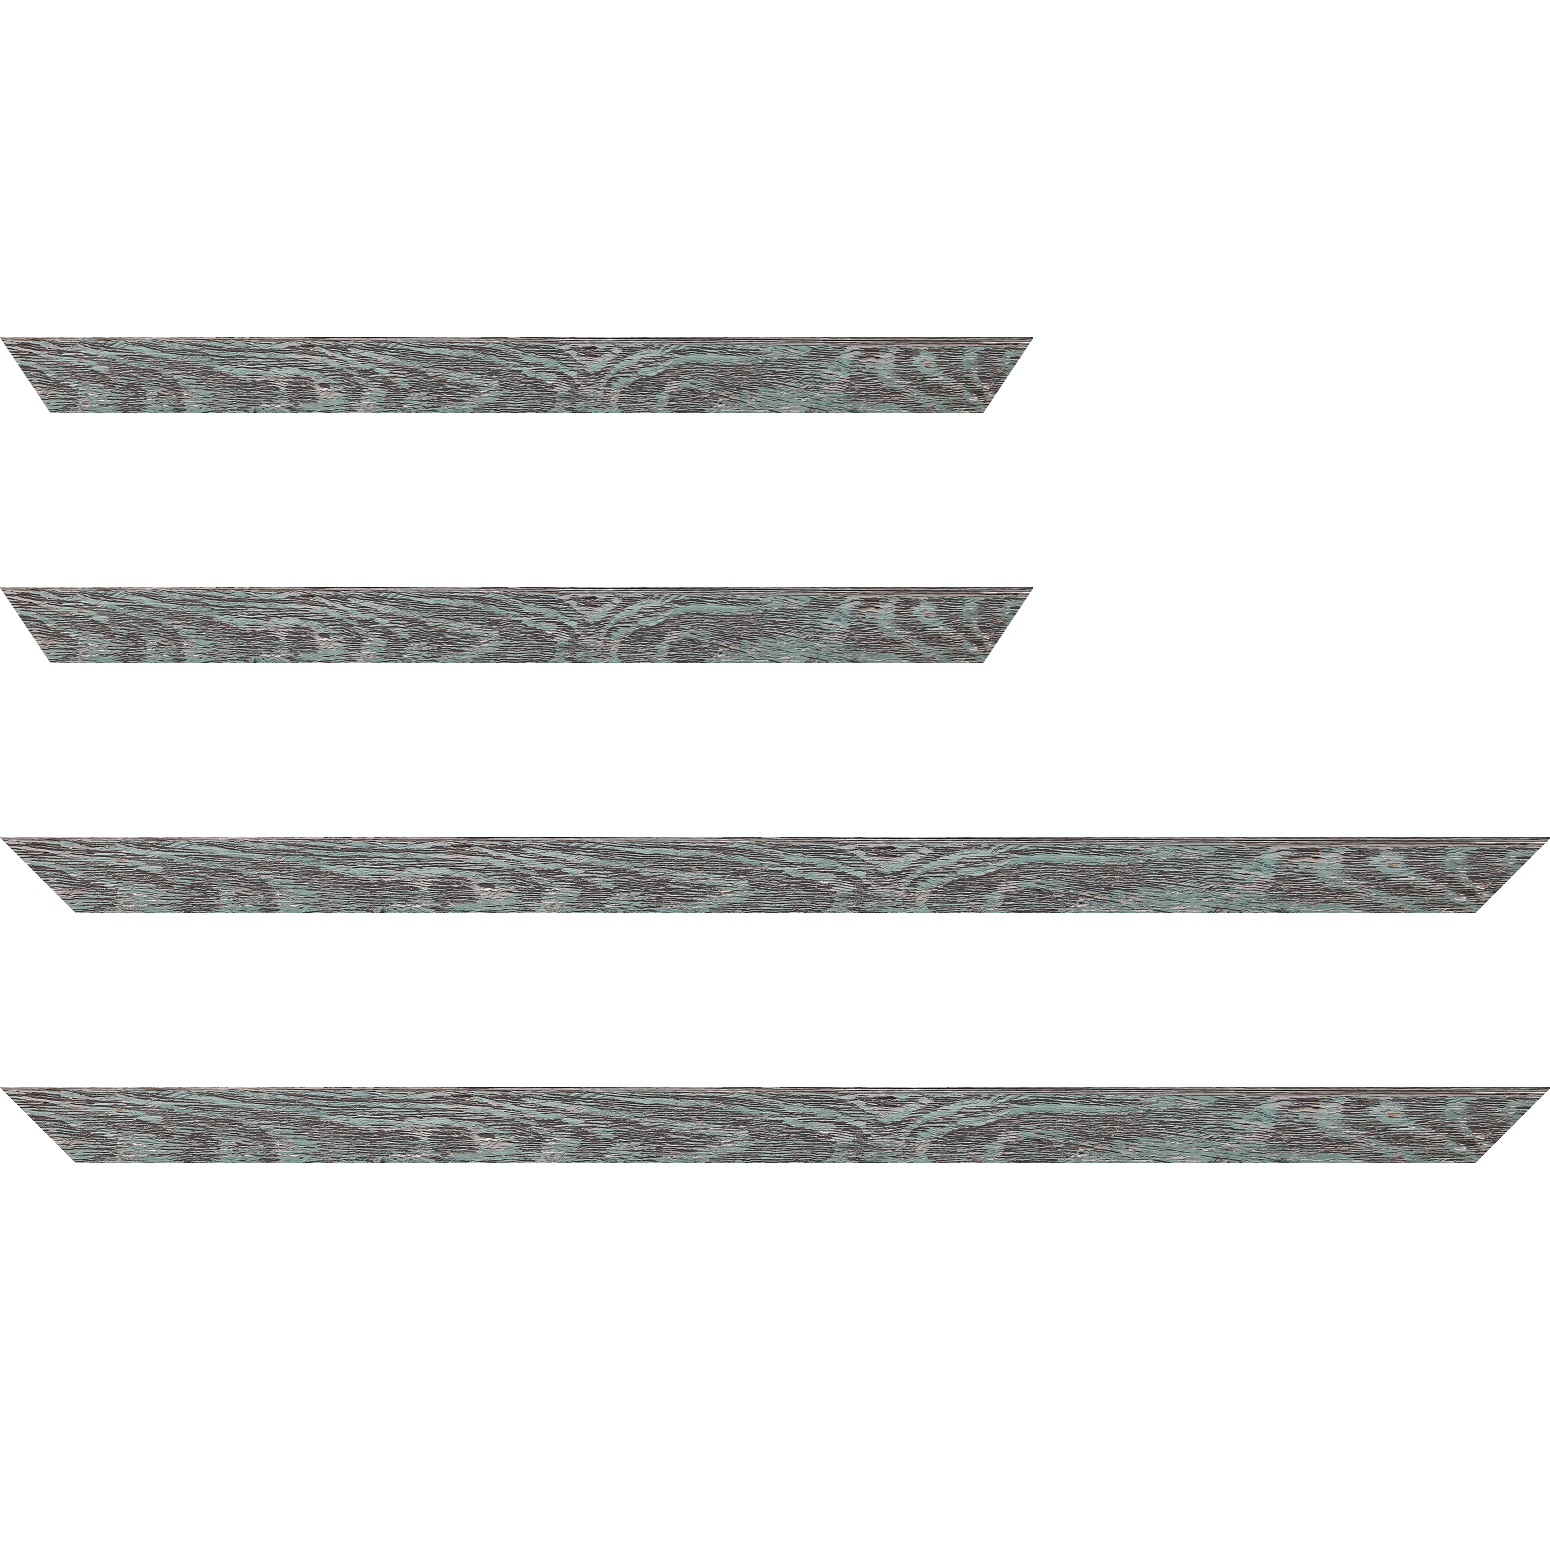 Baguette bois profil arrondi en pente plongeant largeur 2.4cm couleur vert d'eau finition veinée, reflet argenté - 59.4x84.1